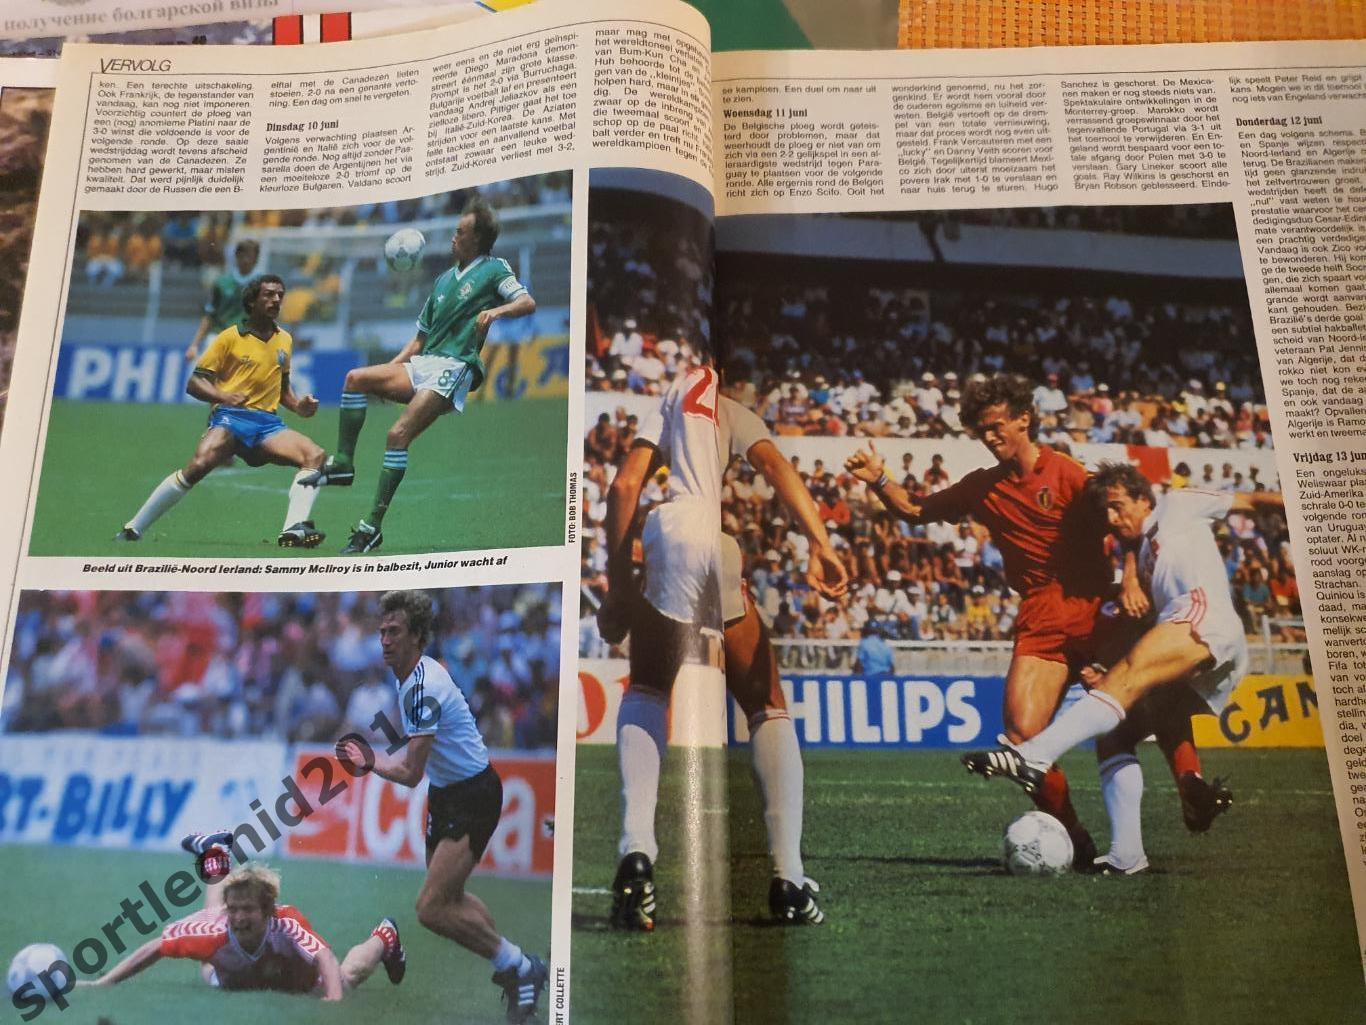 Voetbal International 1986.14 топ выпусков.В том числе итоговые к ЧМ-86.3 7